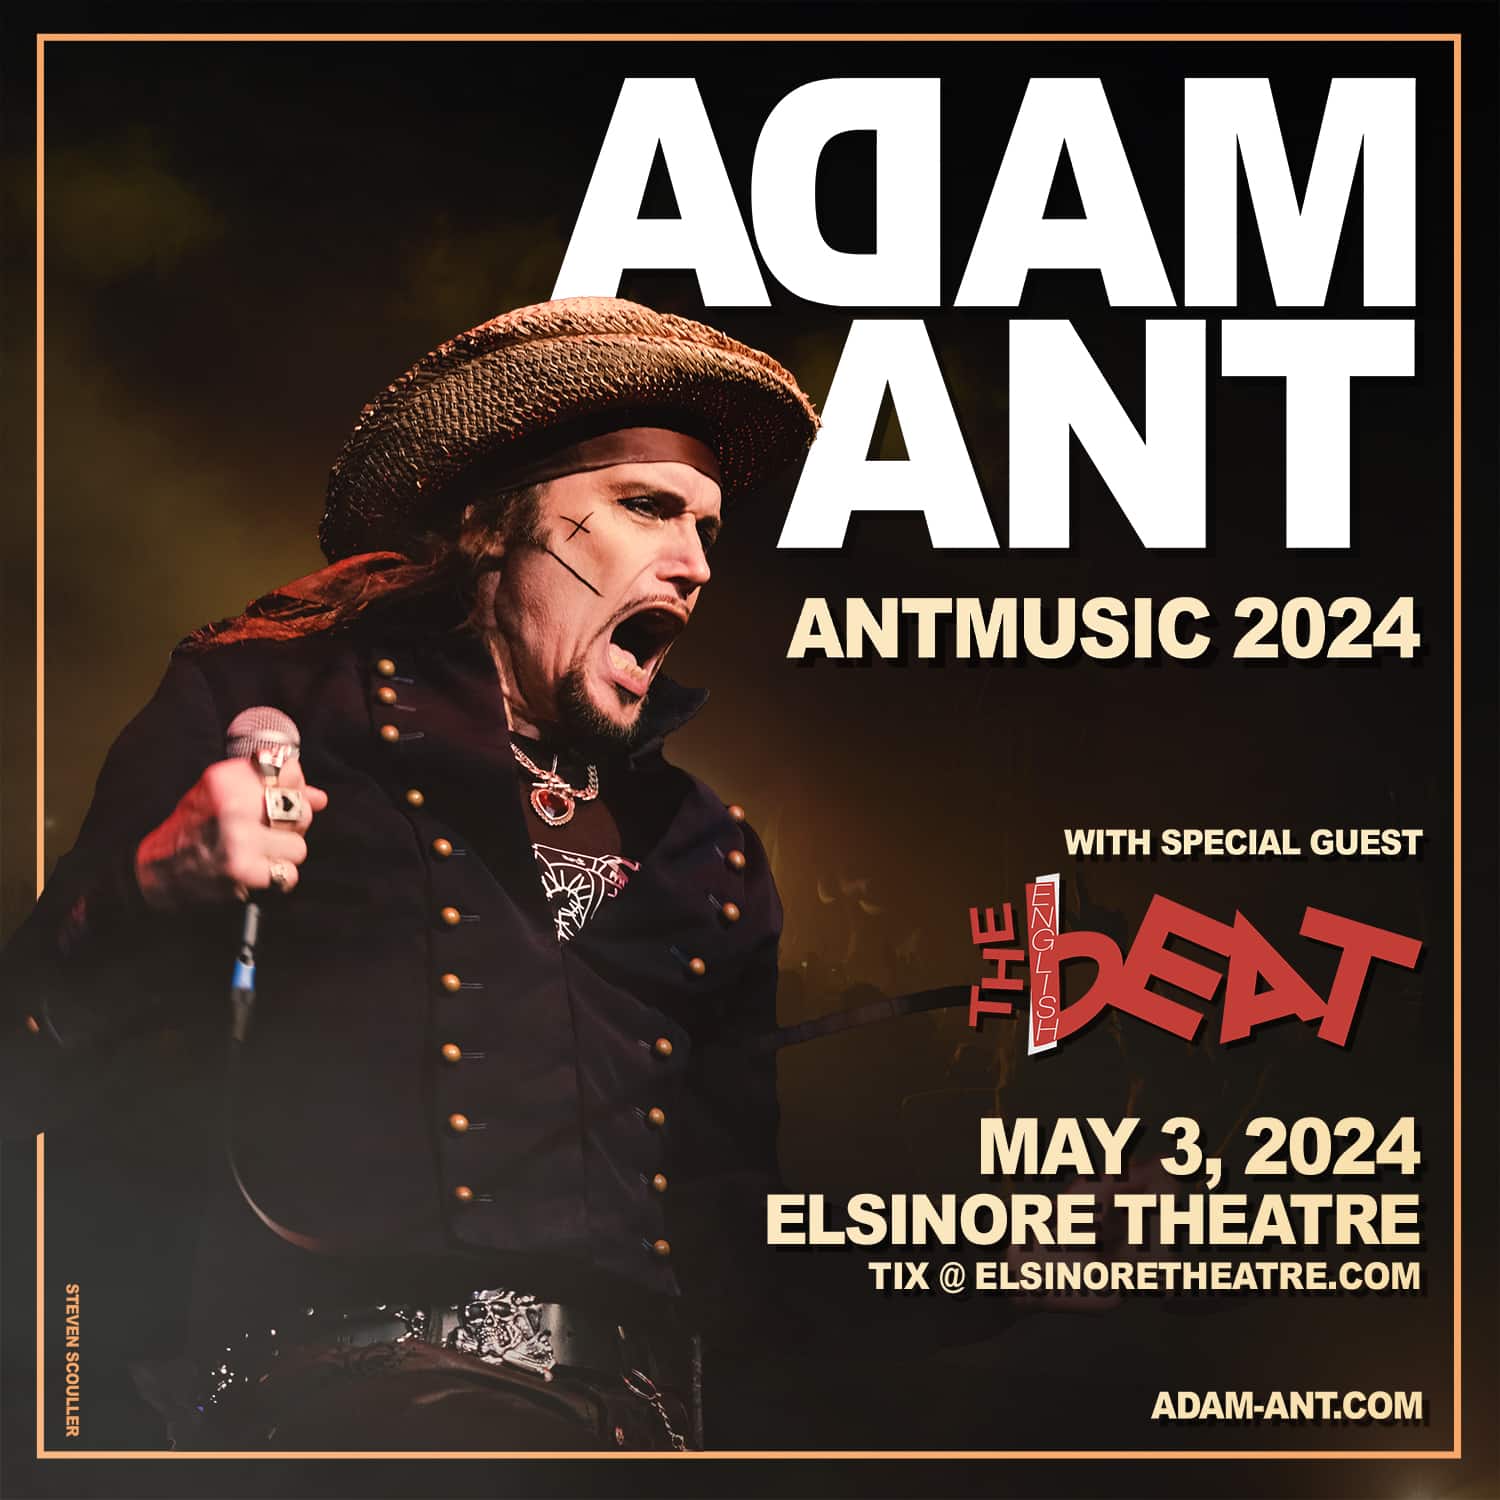 Adam Ant at the Elsinore Theatre